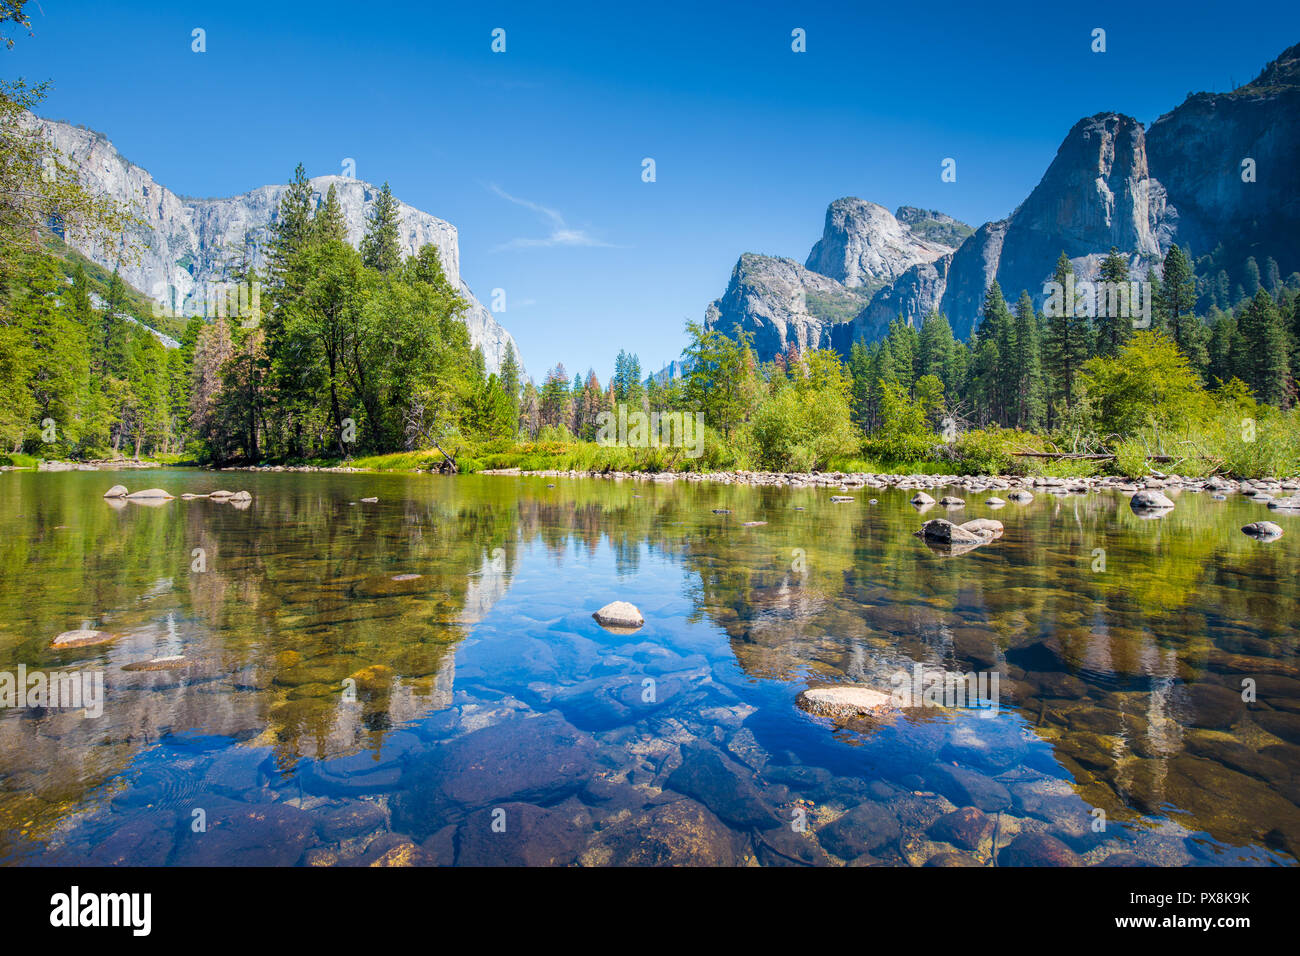 L'affichage classique de la vallée de Yosemite avec El Capitan célèbre sommet mondial de l'escalade et la rivière Merced idyllique sur une journée ensoleillée avec ciel bleu et nuages Banque D'Images